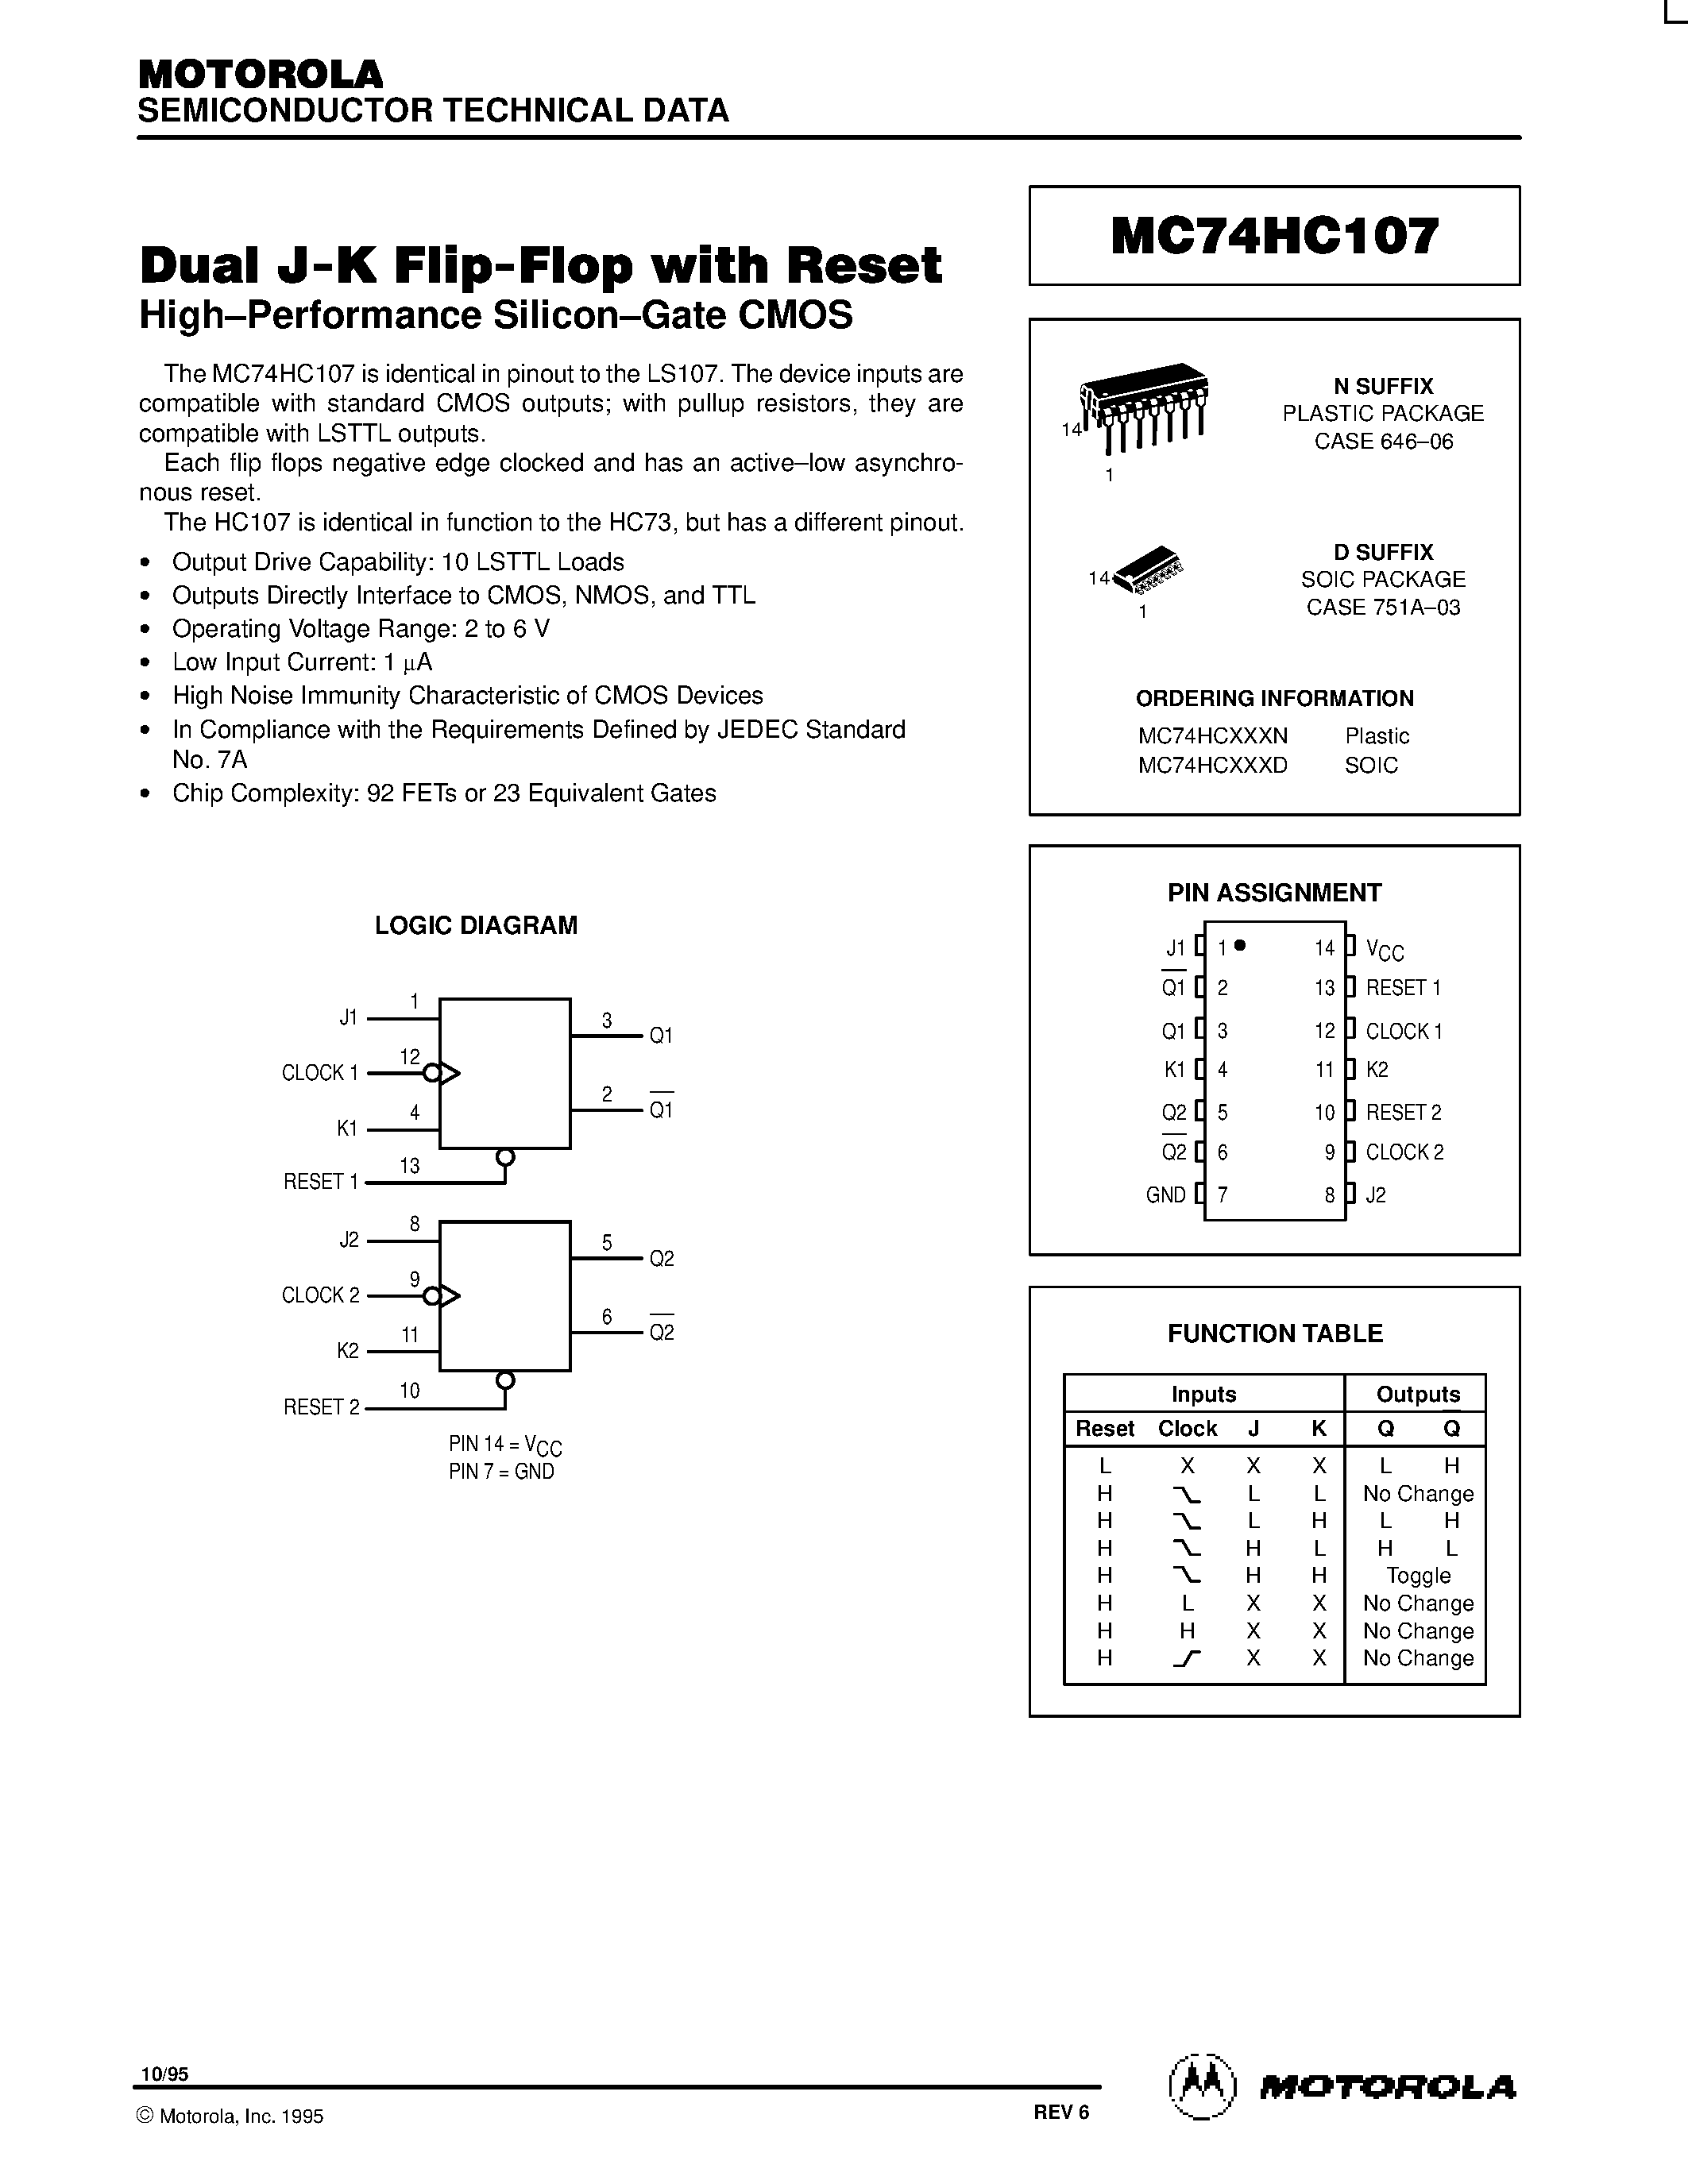 Даташит MC75HC107 - Dual J-K Flip-Flop with Reset страница 1